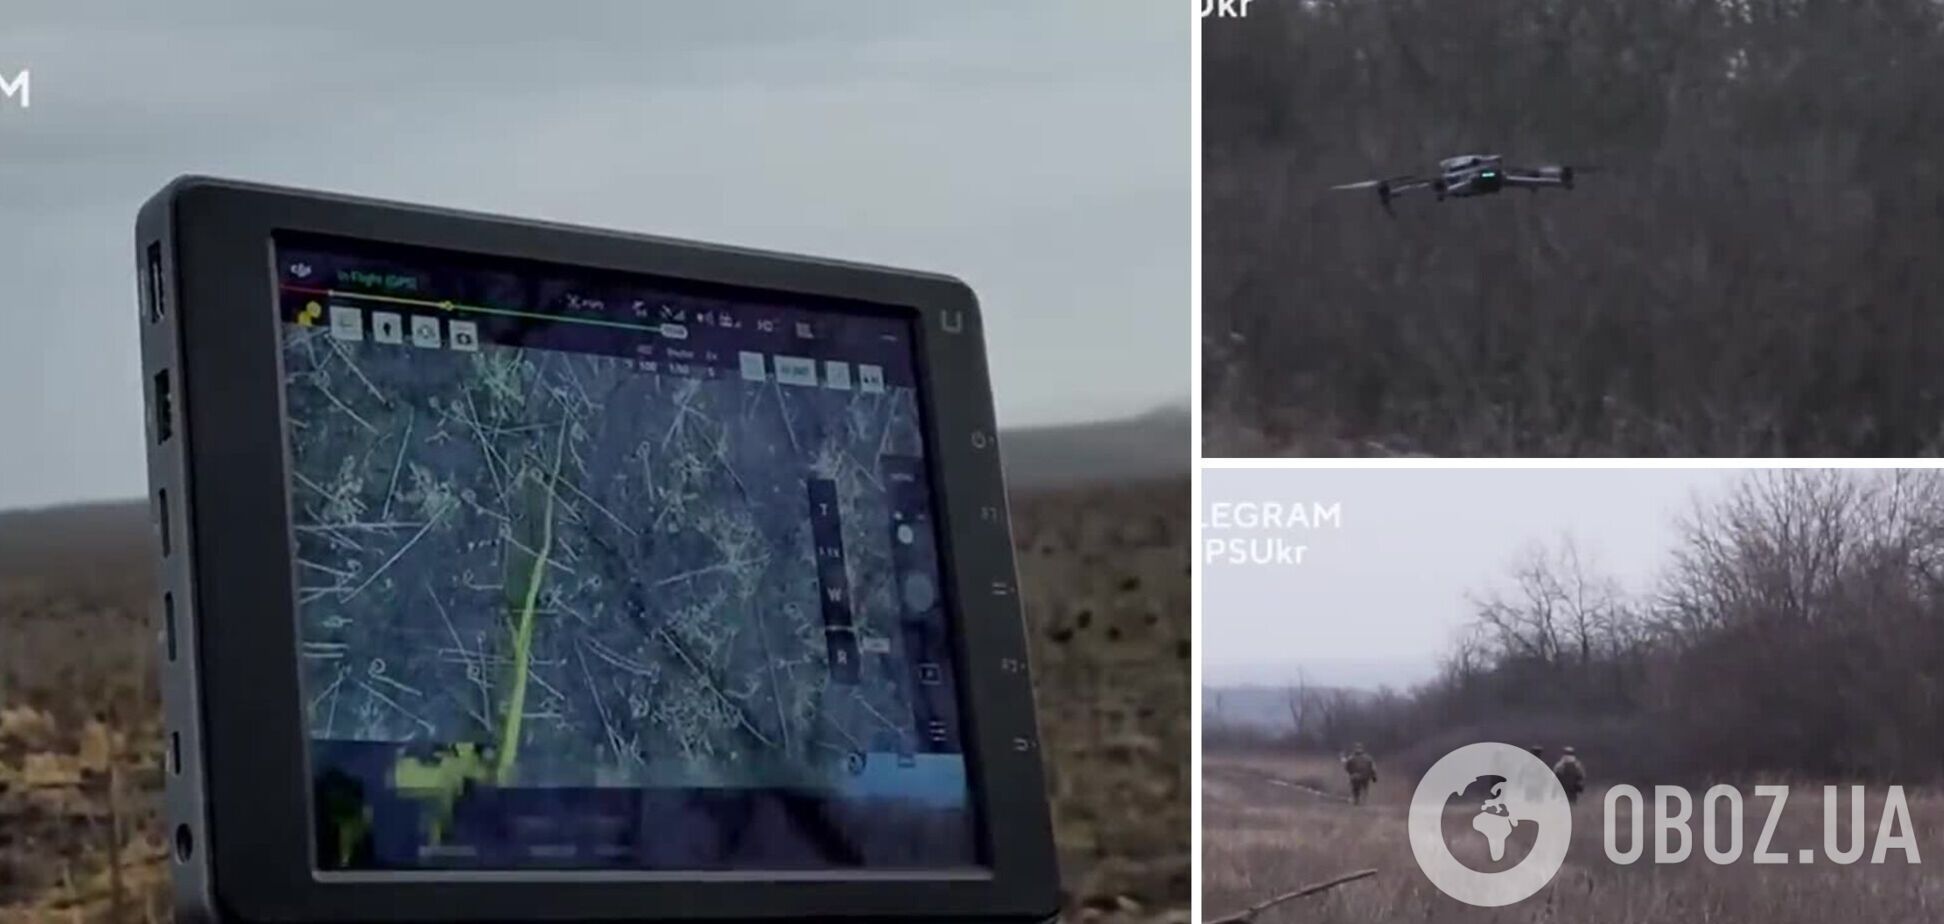 Провели целую 'спецоперацию': как украинские пограничники спасли попавший под влияние вражеского РЭБ дрон. Видео